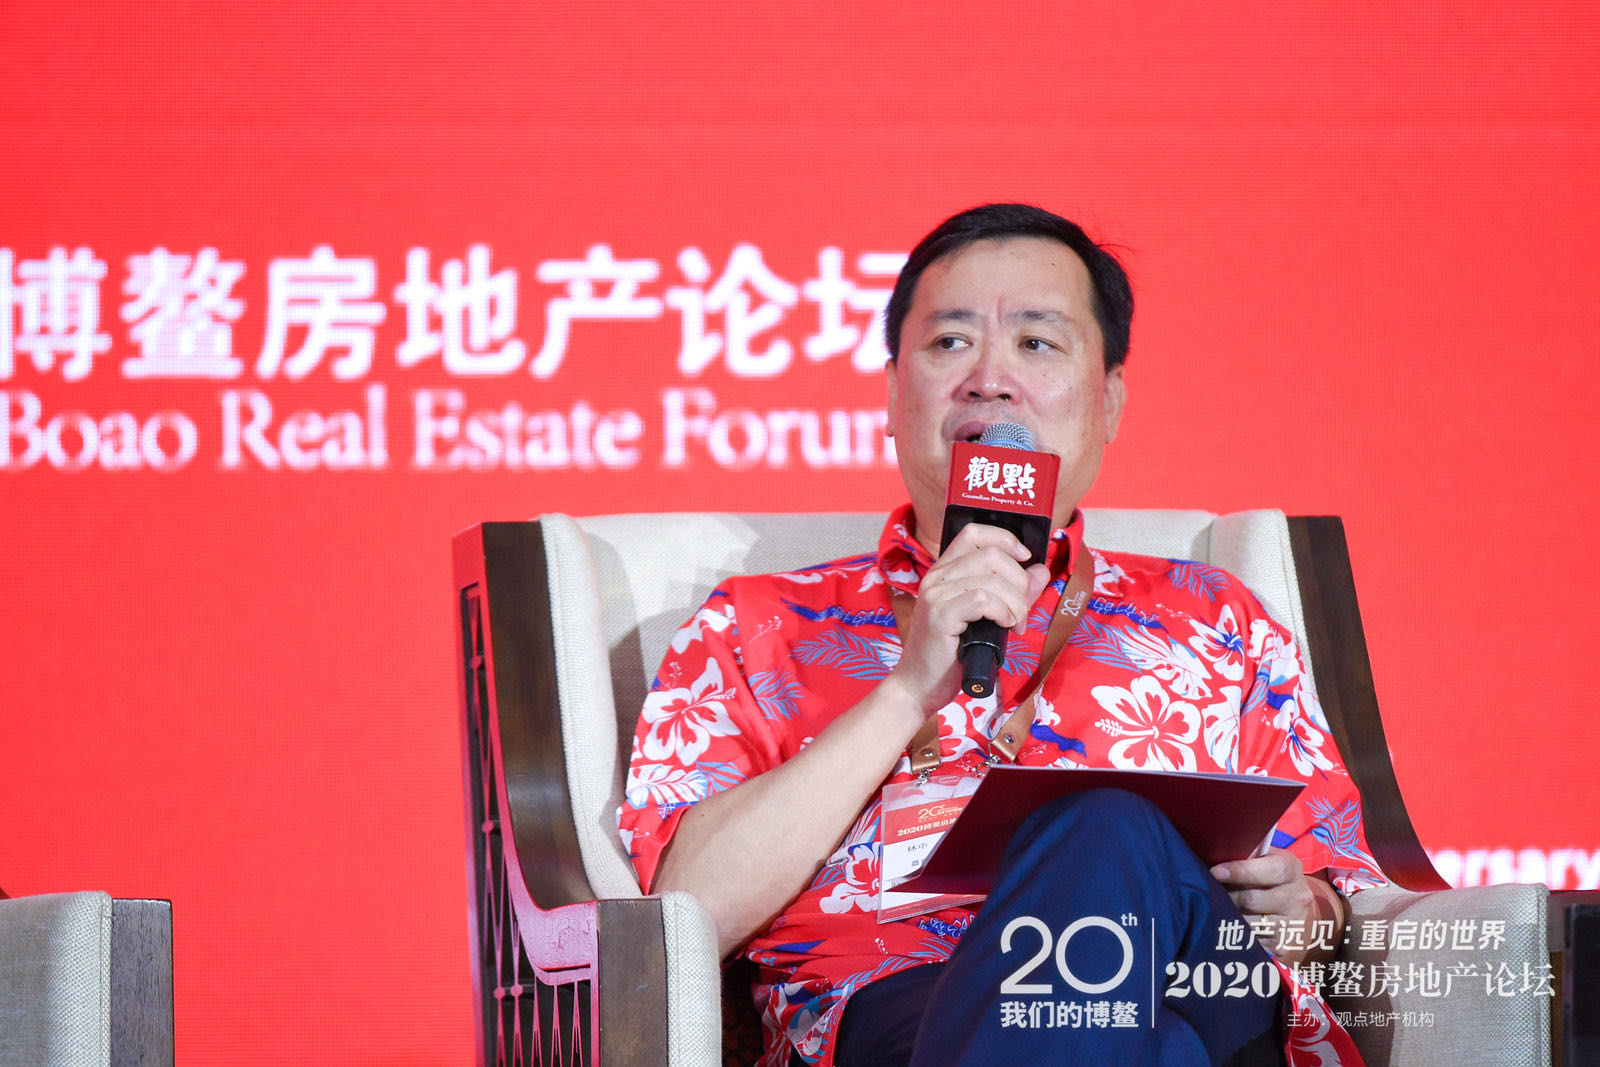 旭辉集团林中:至少未来20年还是要看好中国房地产业